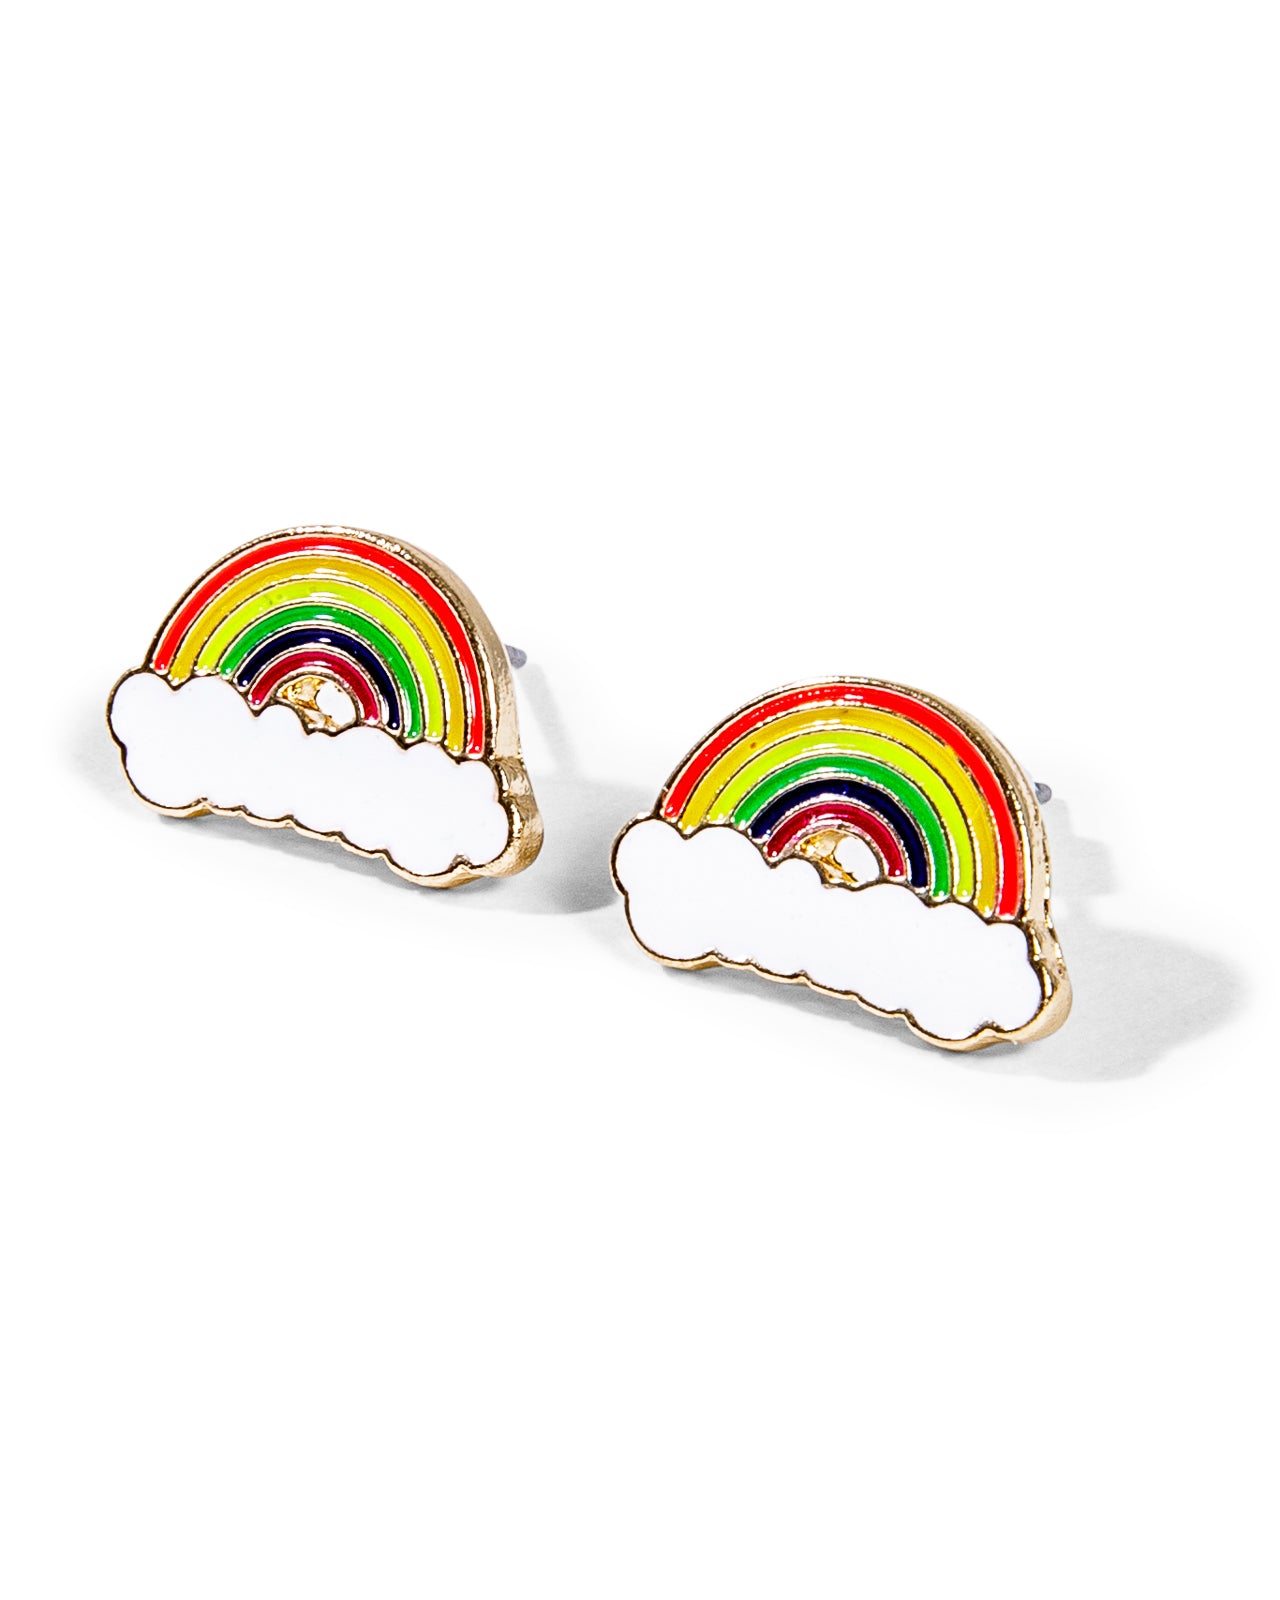 Over The Rainbow Studded Earrings - By Samii Ryan 